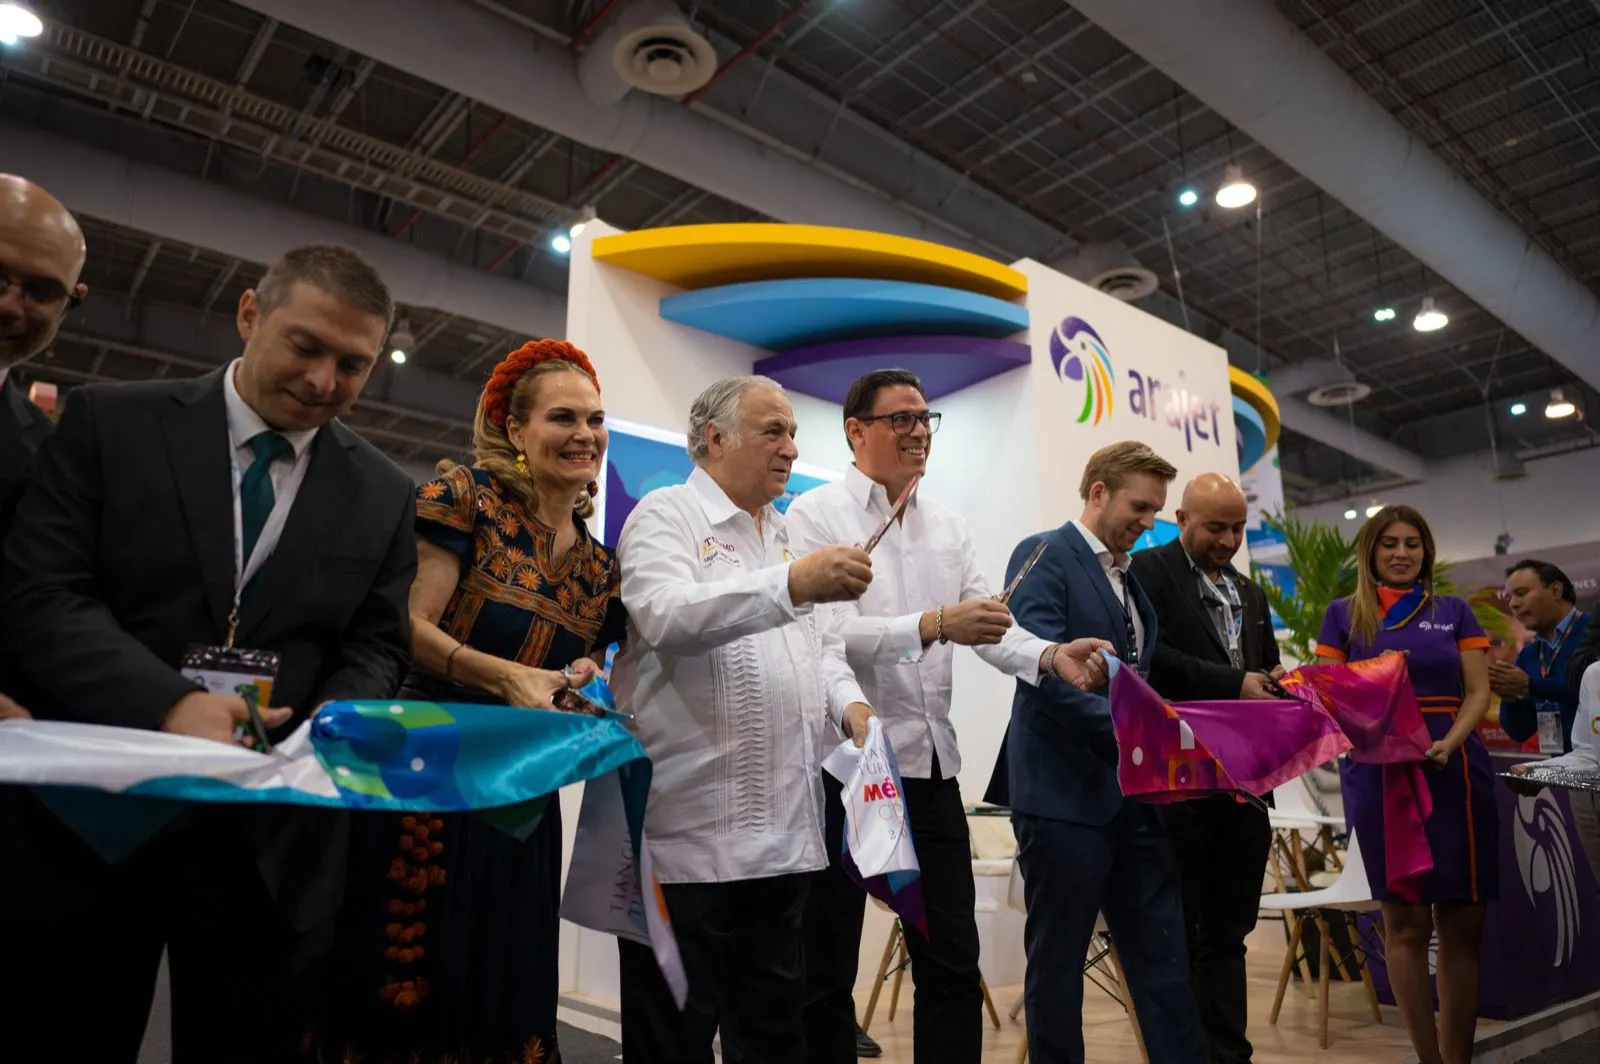 Arajet inaugura nueva ruta México-Medellín con oferta de 5 dólares